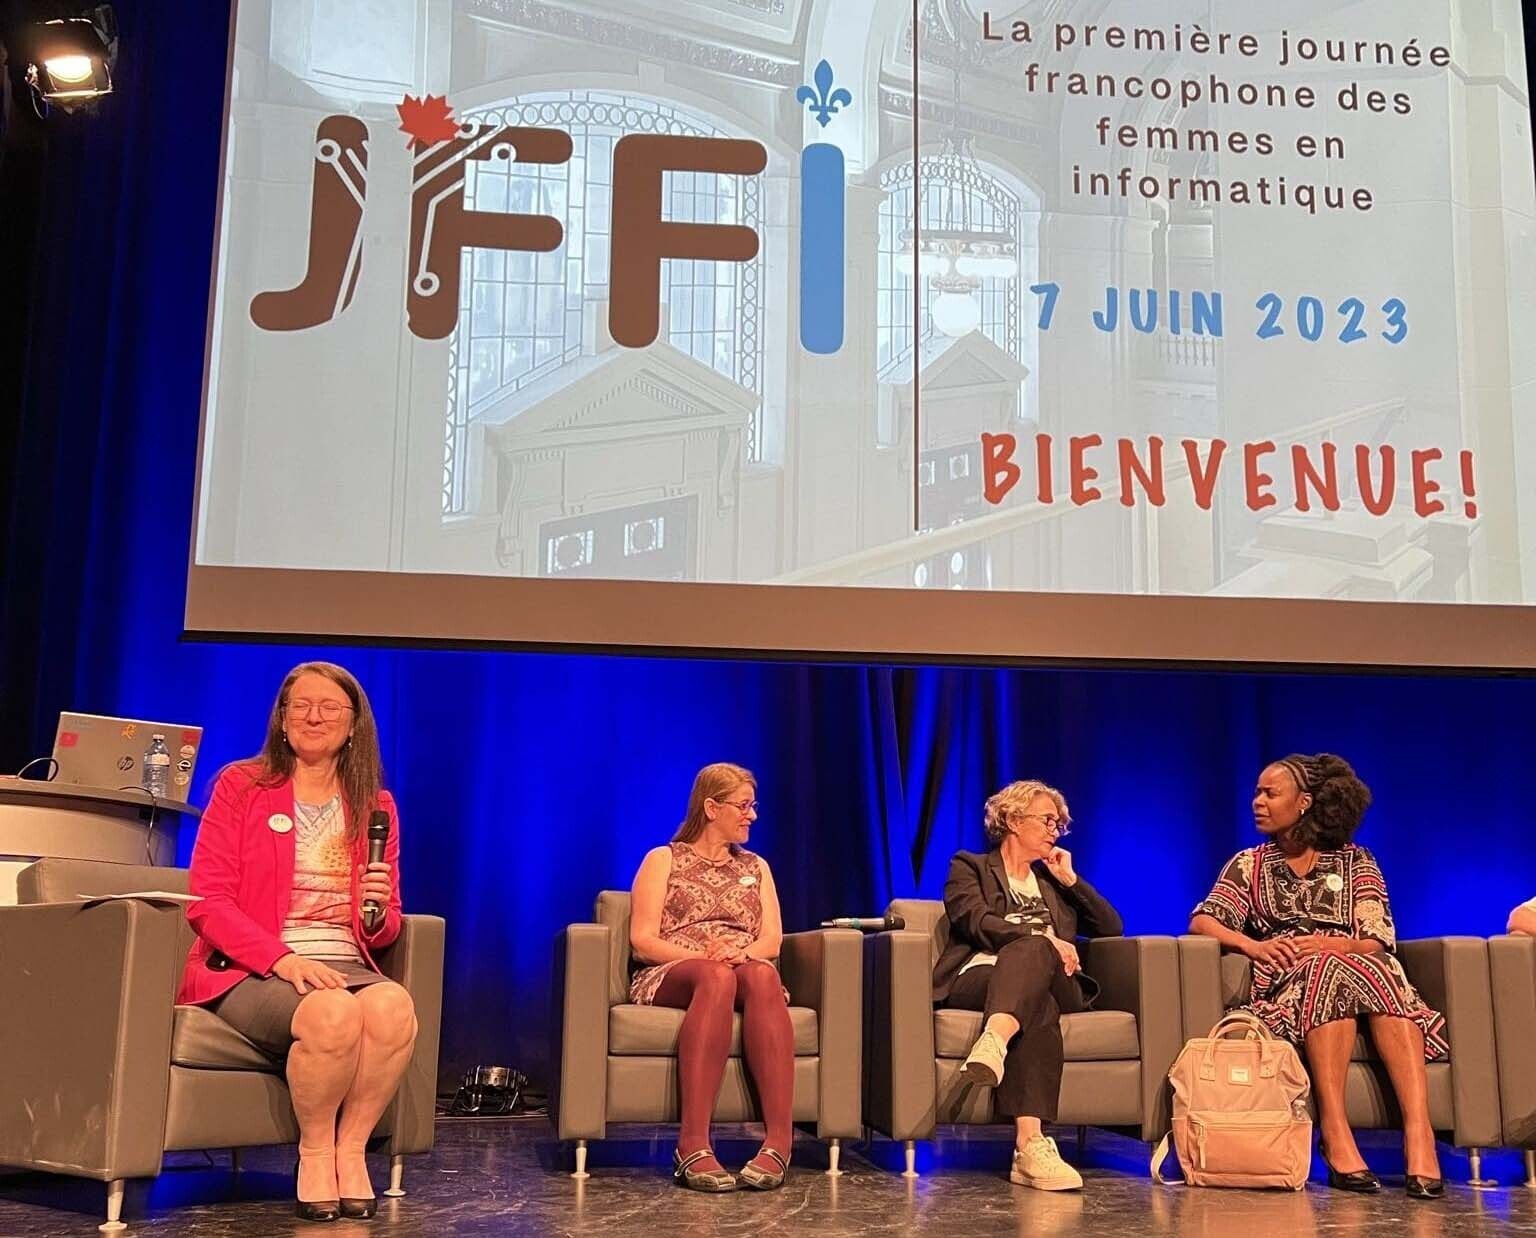 Journee francophone femmes informatique